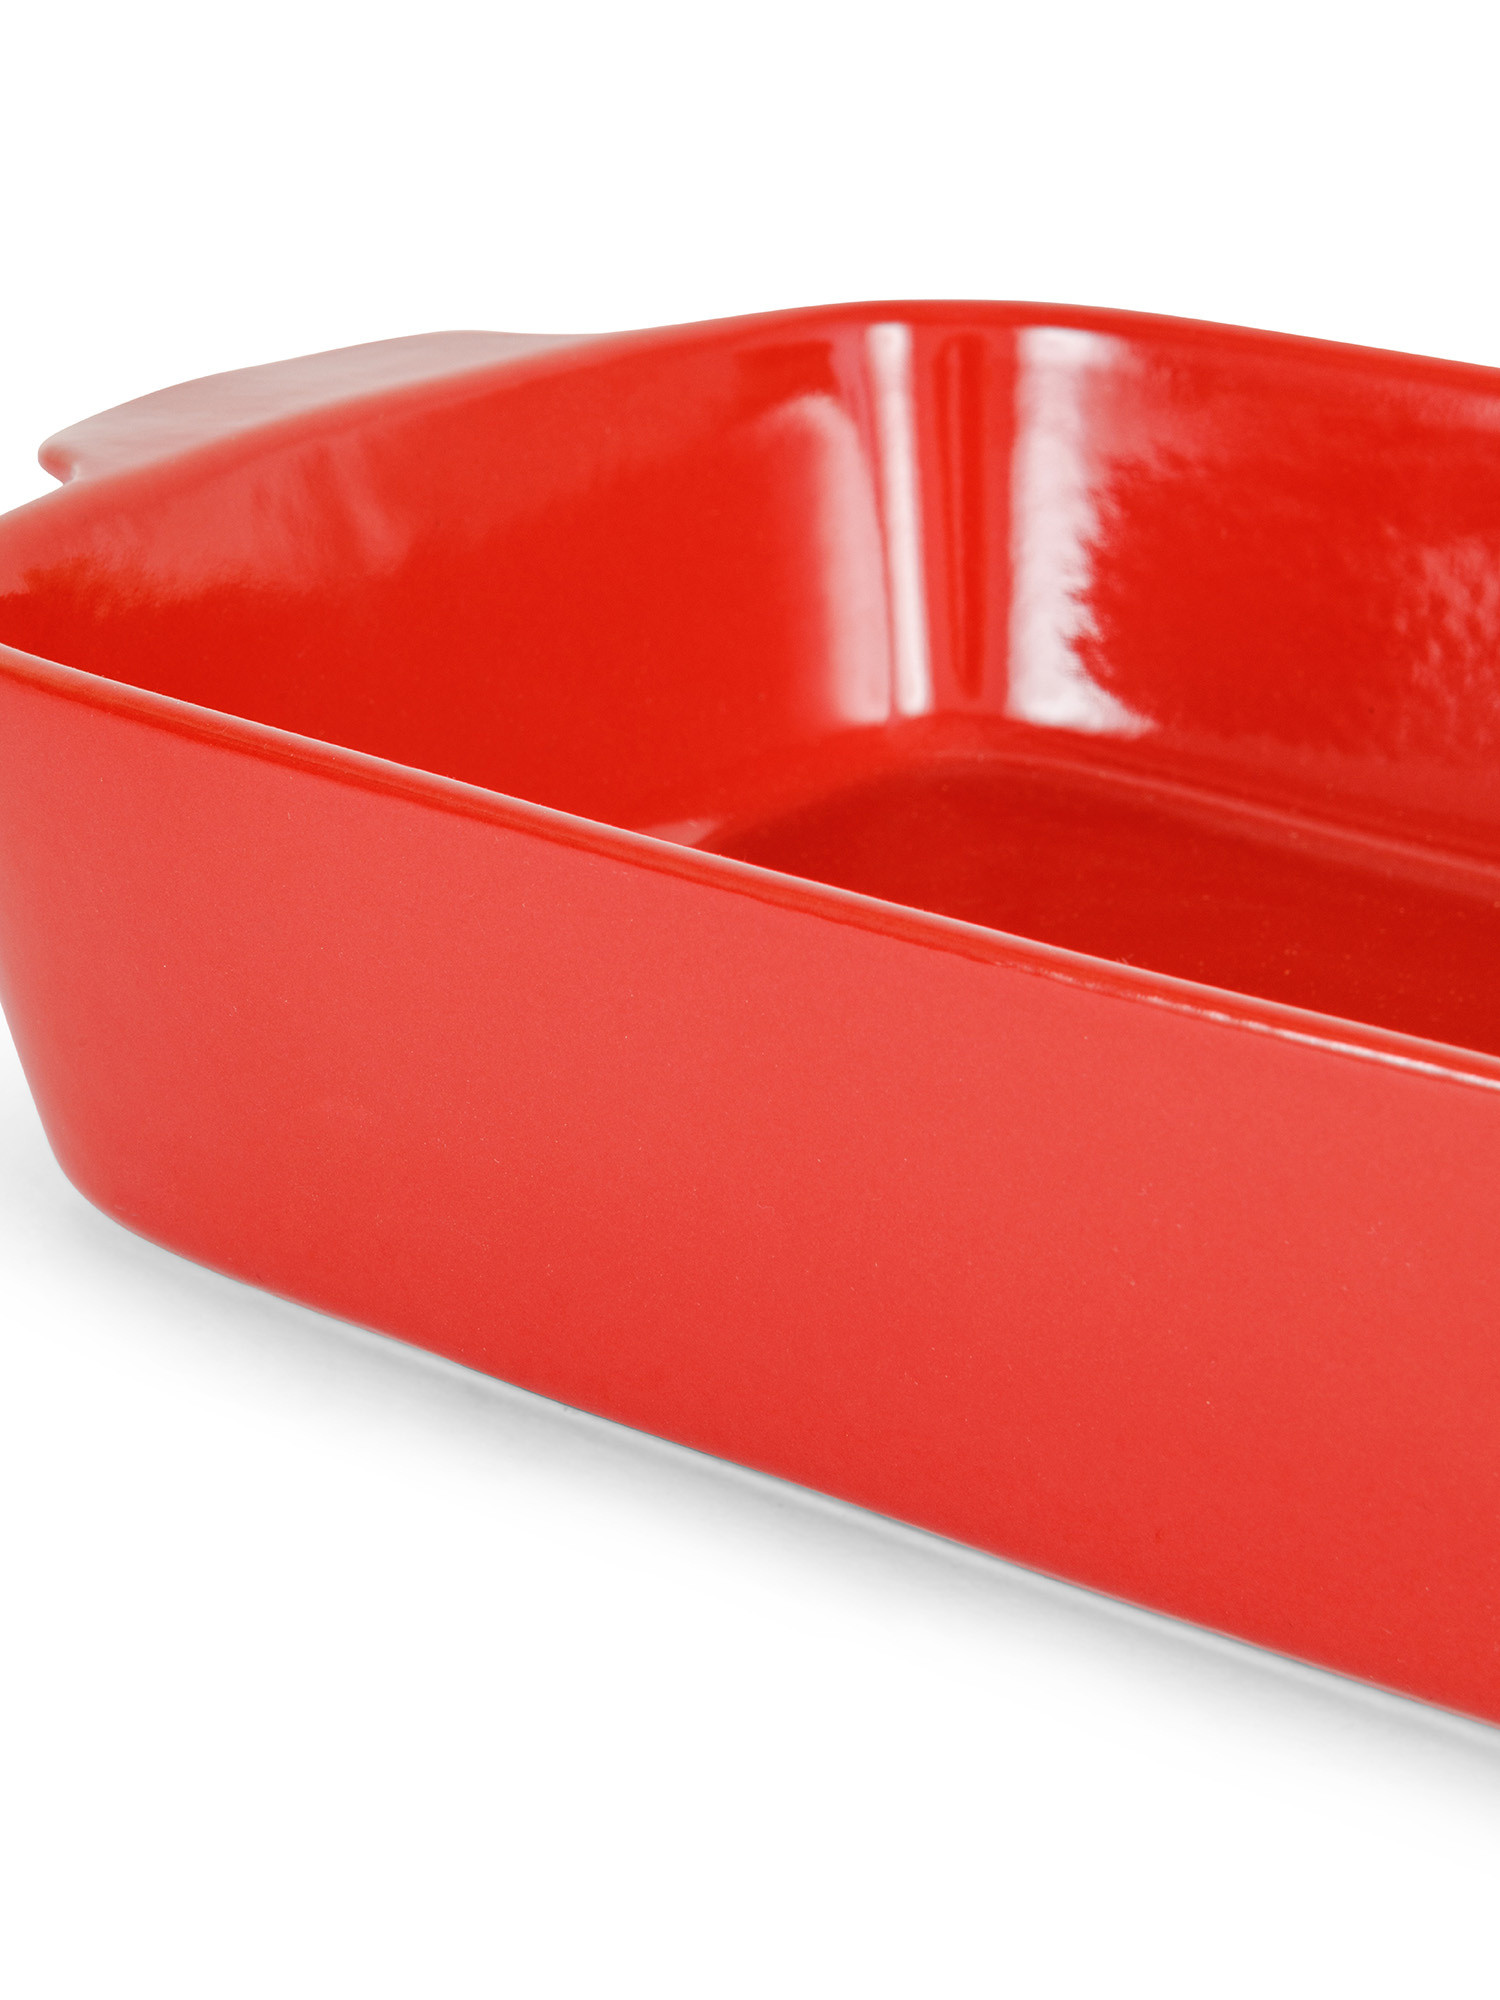 Rectangular ceramic baking dish, Red, large image number 1